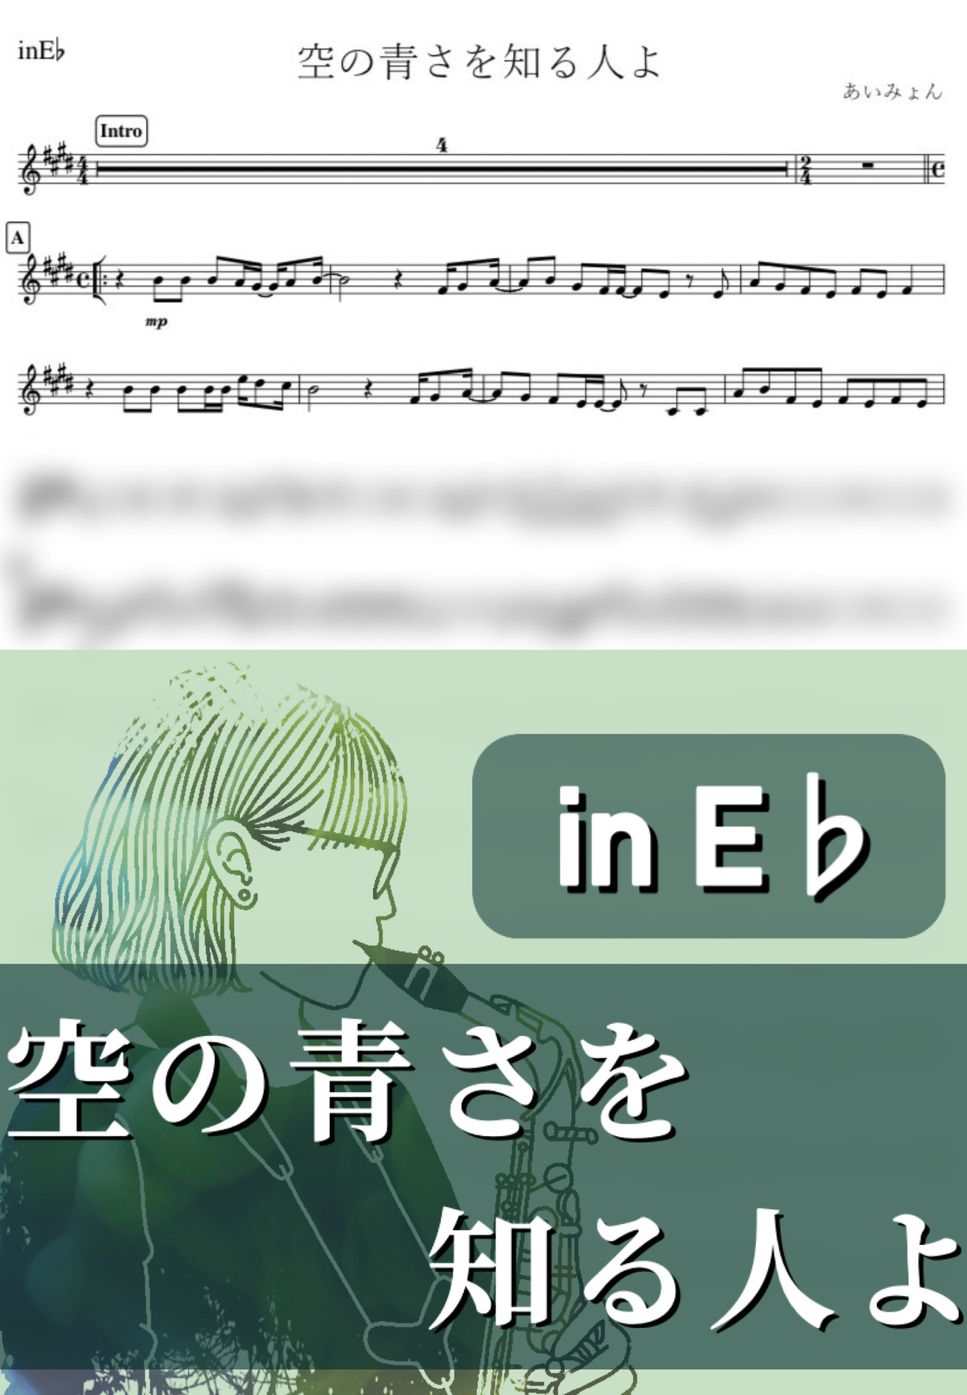 あいみょん - 空の青さを知る人よ (E♭) by kanamusic